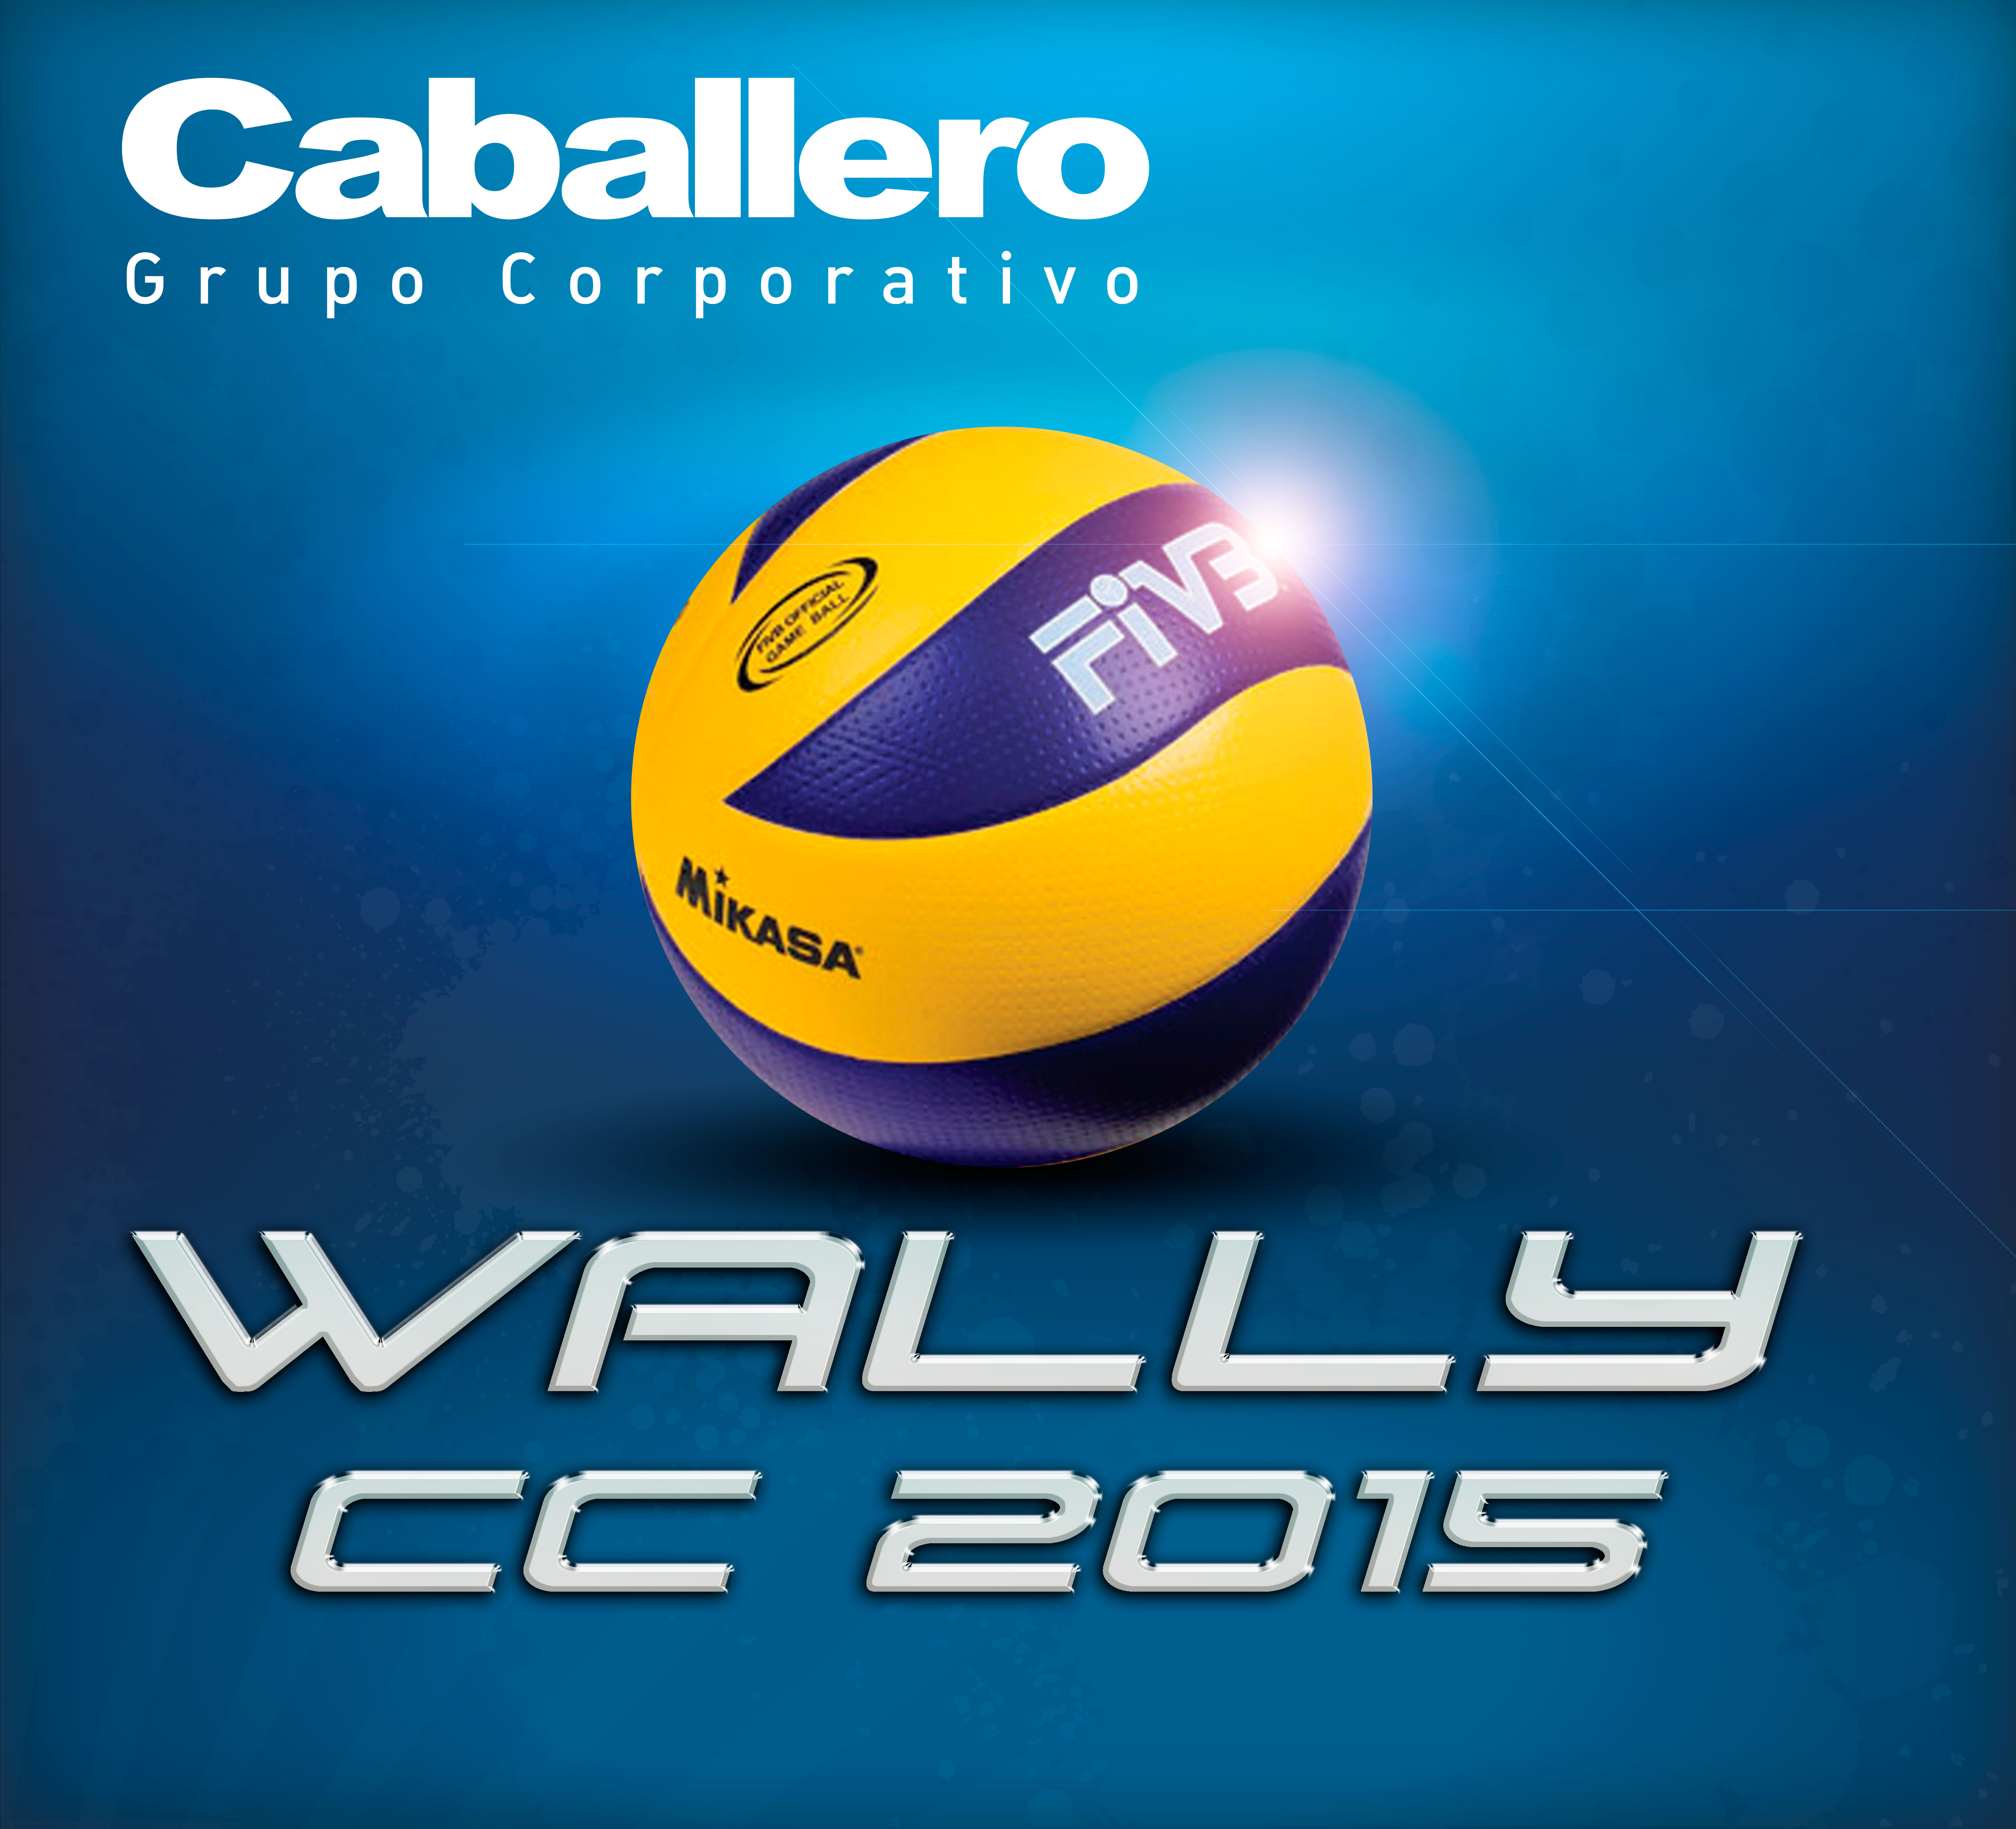 Voley Campeonato Wally Caballero 2015